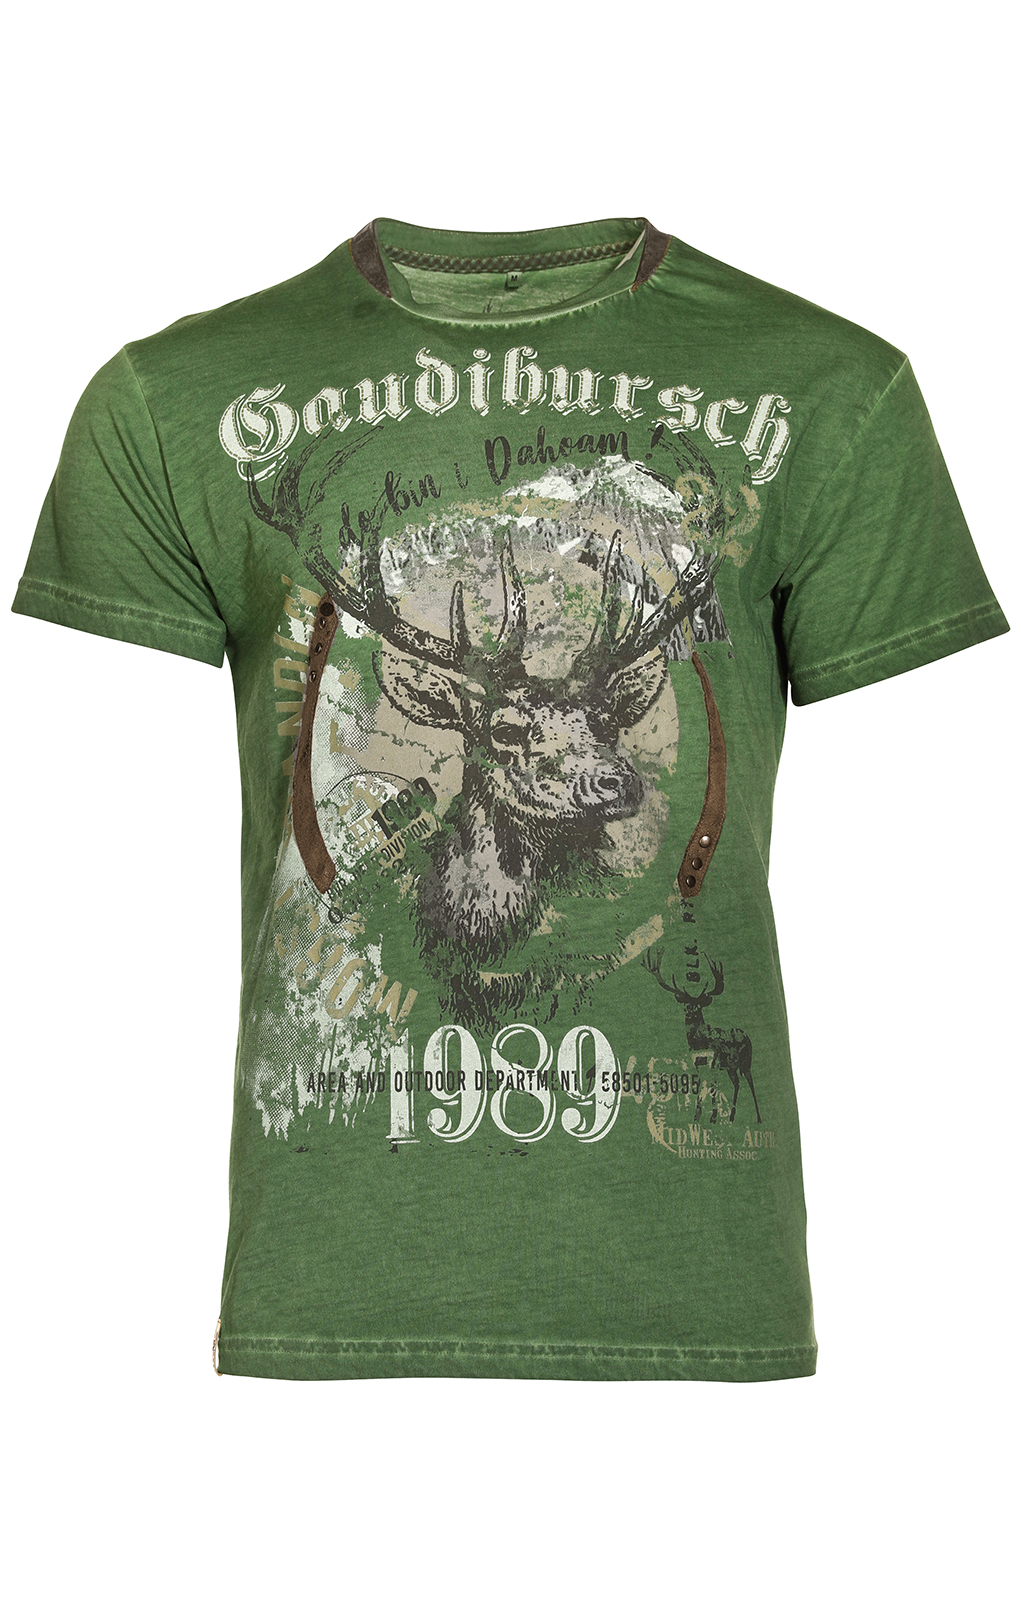 weitere Bilder von Costumes T-shirt B36 - GAUDIBURSCH green